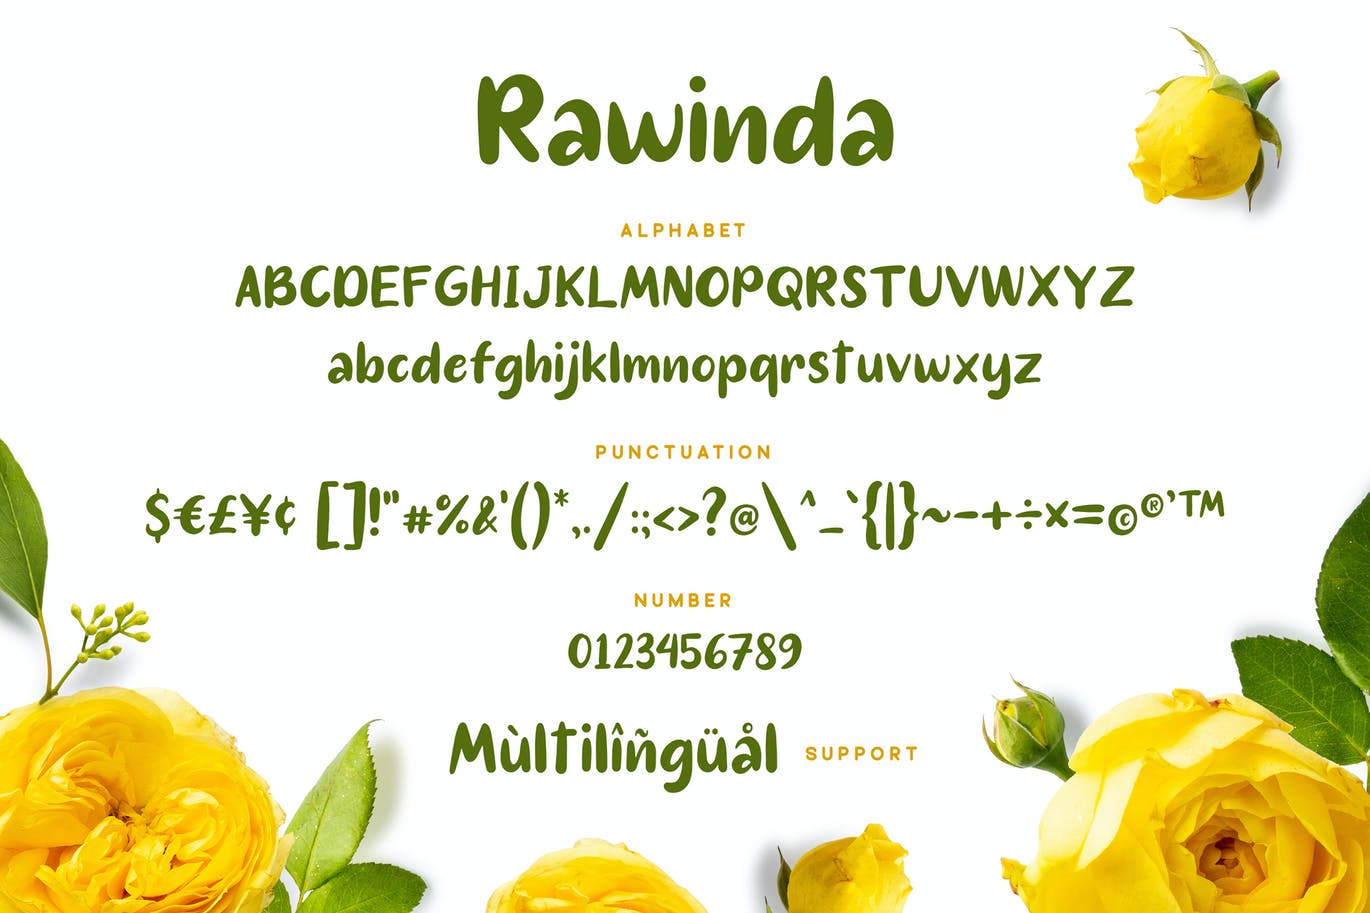 现代甜美手写字体素材 Rawinda Font 设计素材 第2张